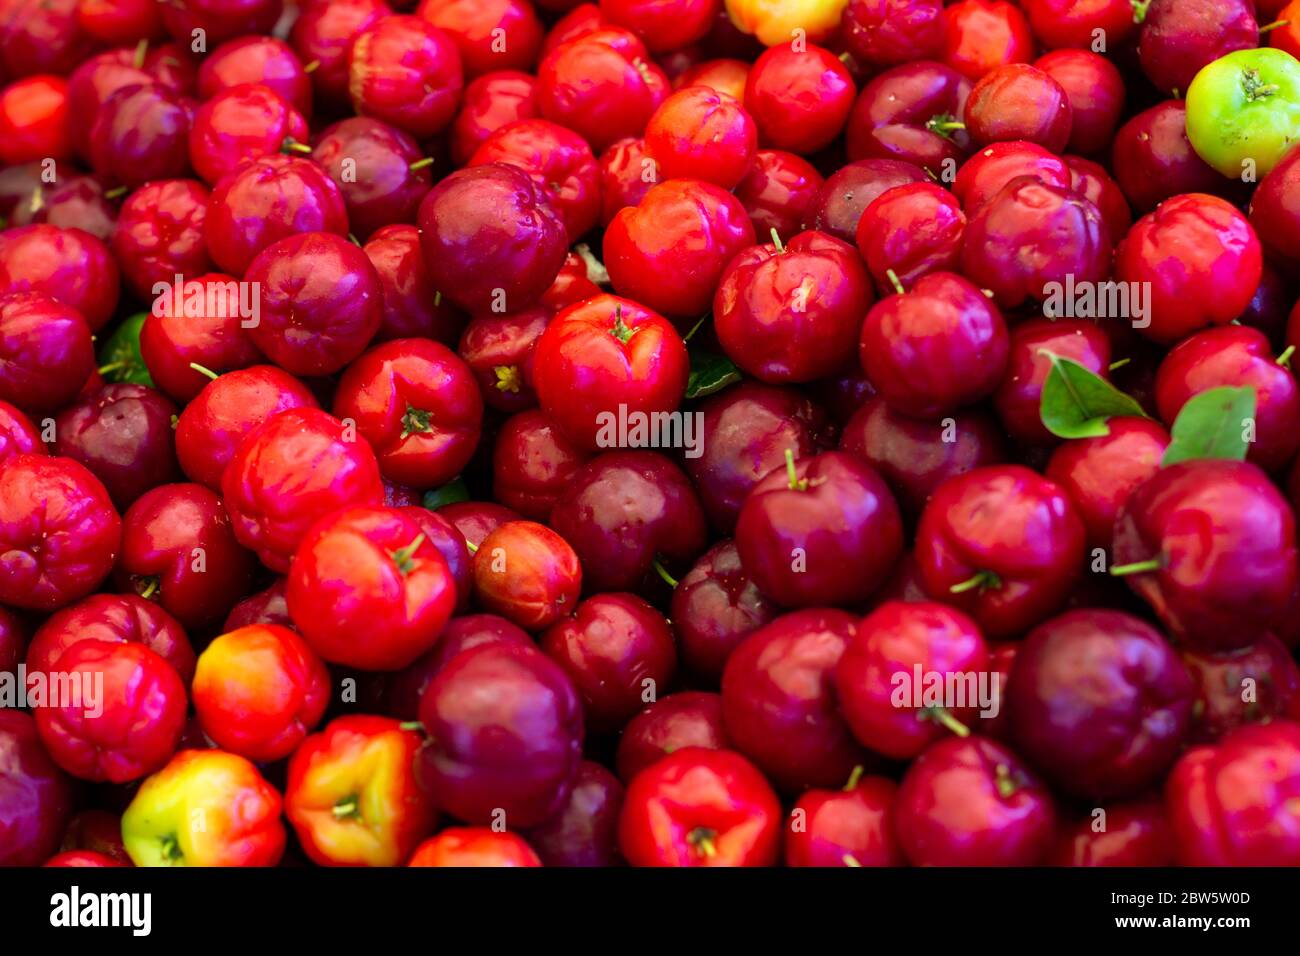 Frutti aspri immagini e fotografie stock ad alta risoluzione - Alamy